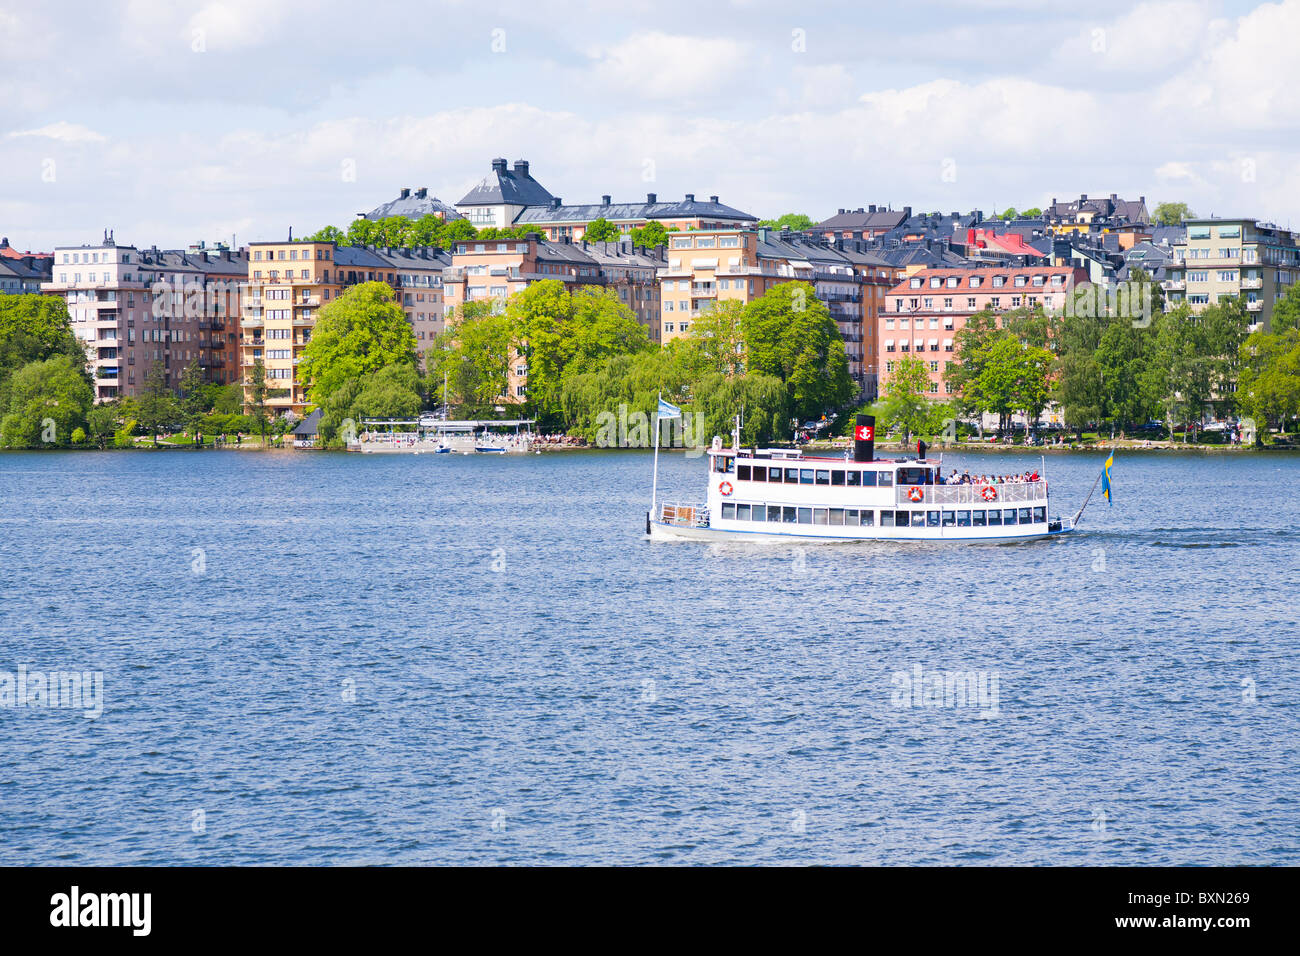 Nave passeggeri sul suo modo di Drottningholm, di fronte all'isola di Kungsholmen nel centro di Stoccolma, Svezia. Foto Stock